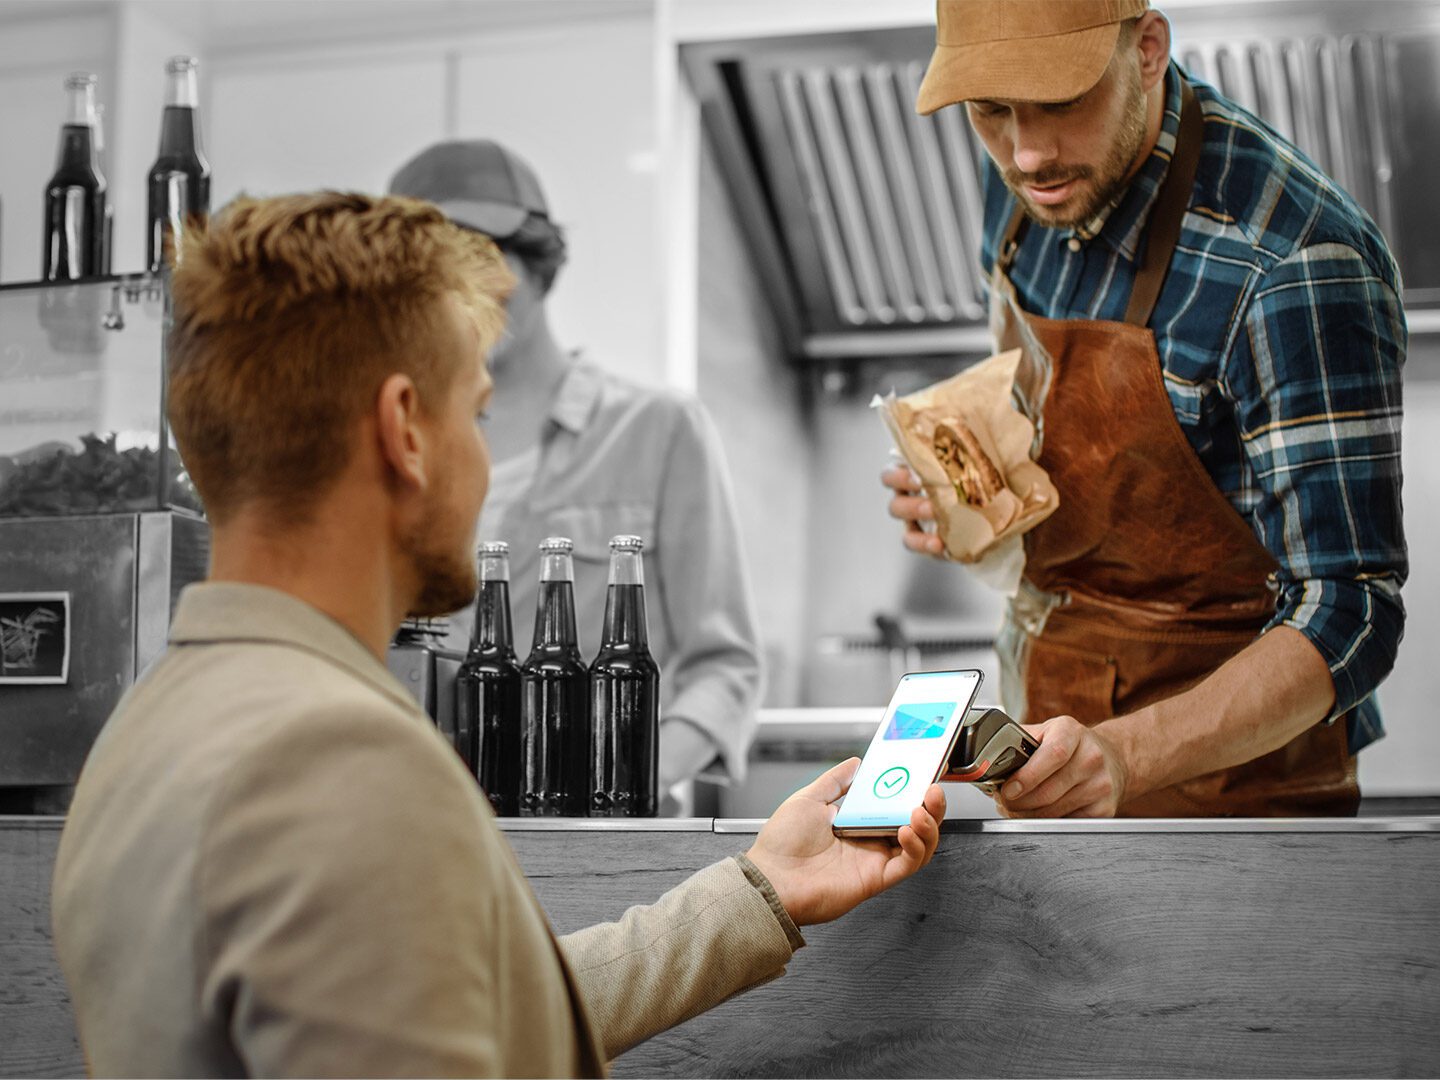 Der Betreiber eines Foodtrucks bevorzugt neue Payment-Lösungen. Hier zahlt ein Kunde per Smartphone.